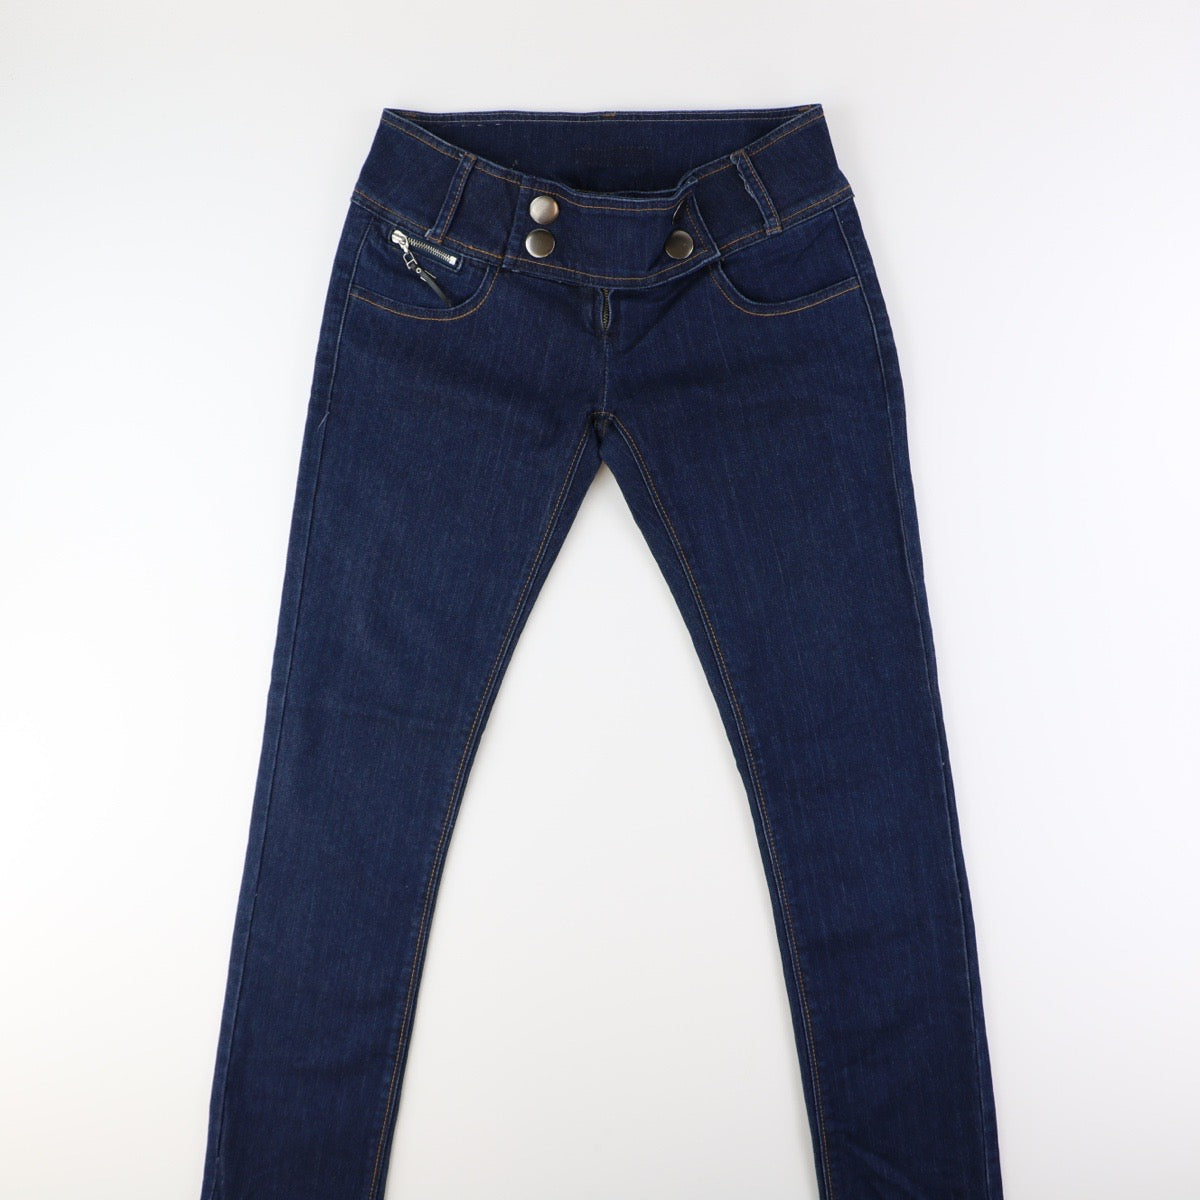 Dolce _ Gabbana Jeans  (31)